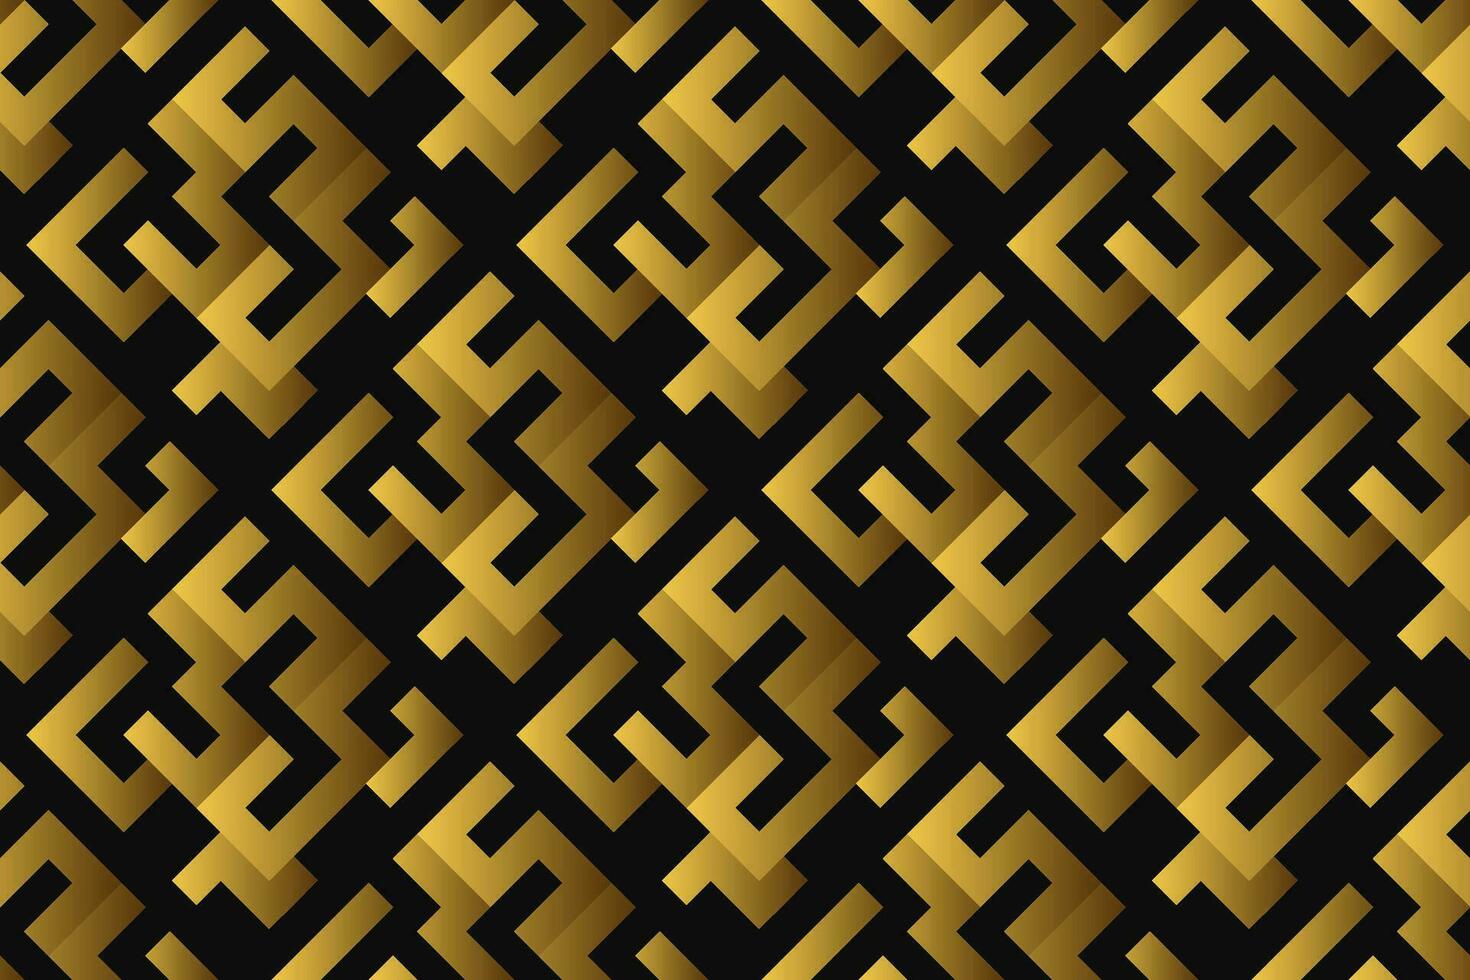 abstrakt geometrisk mönster med rader, romber en sömlös vektor bakgrund. svart och guld textur